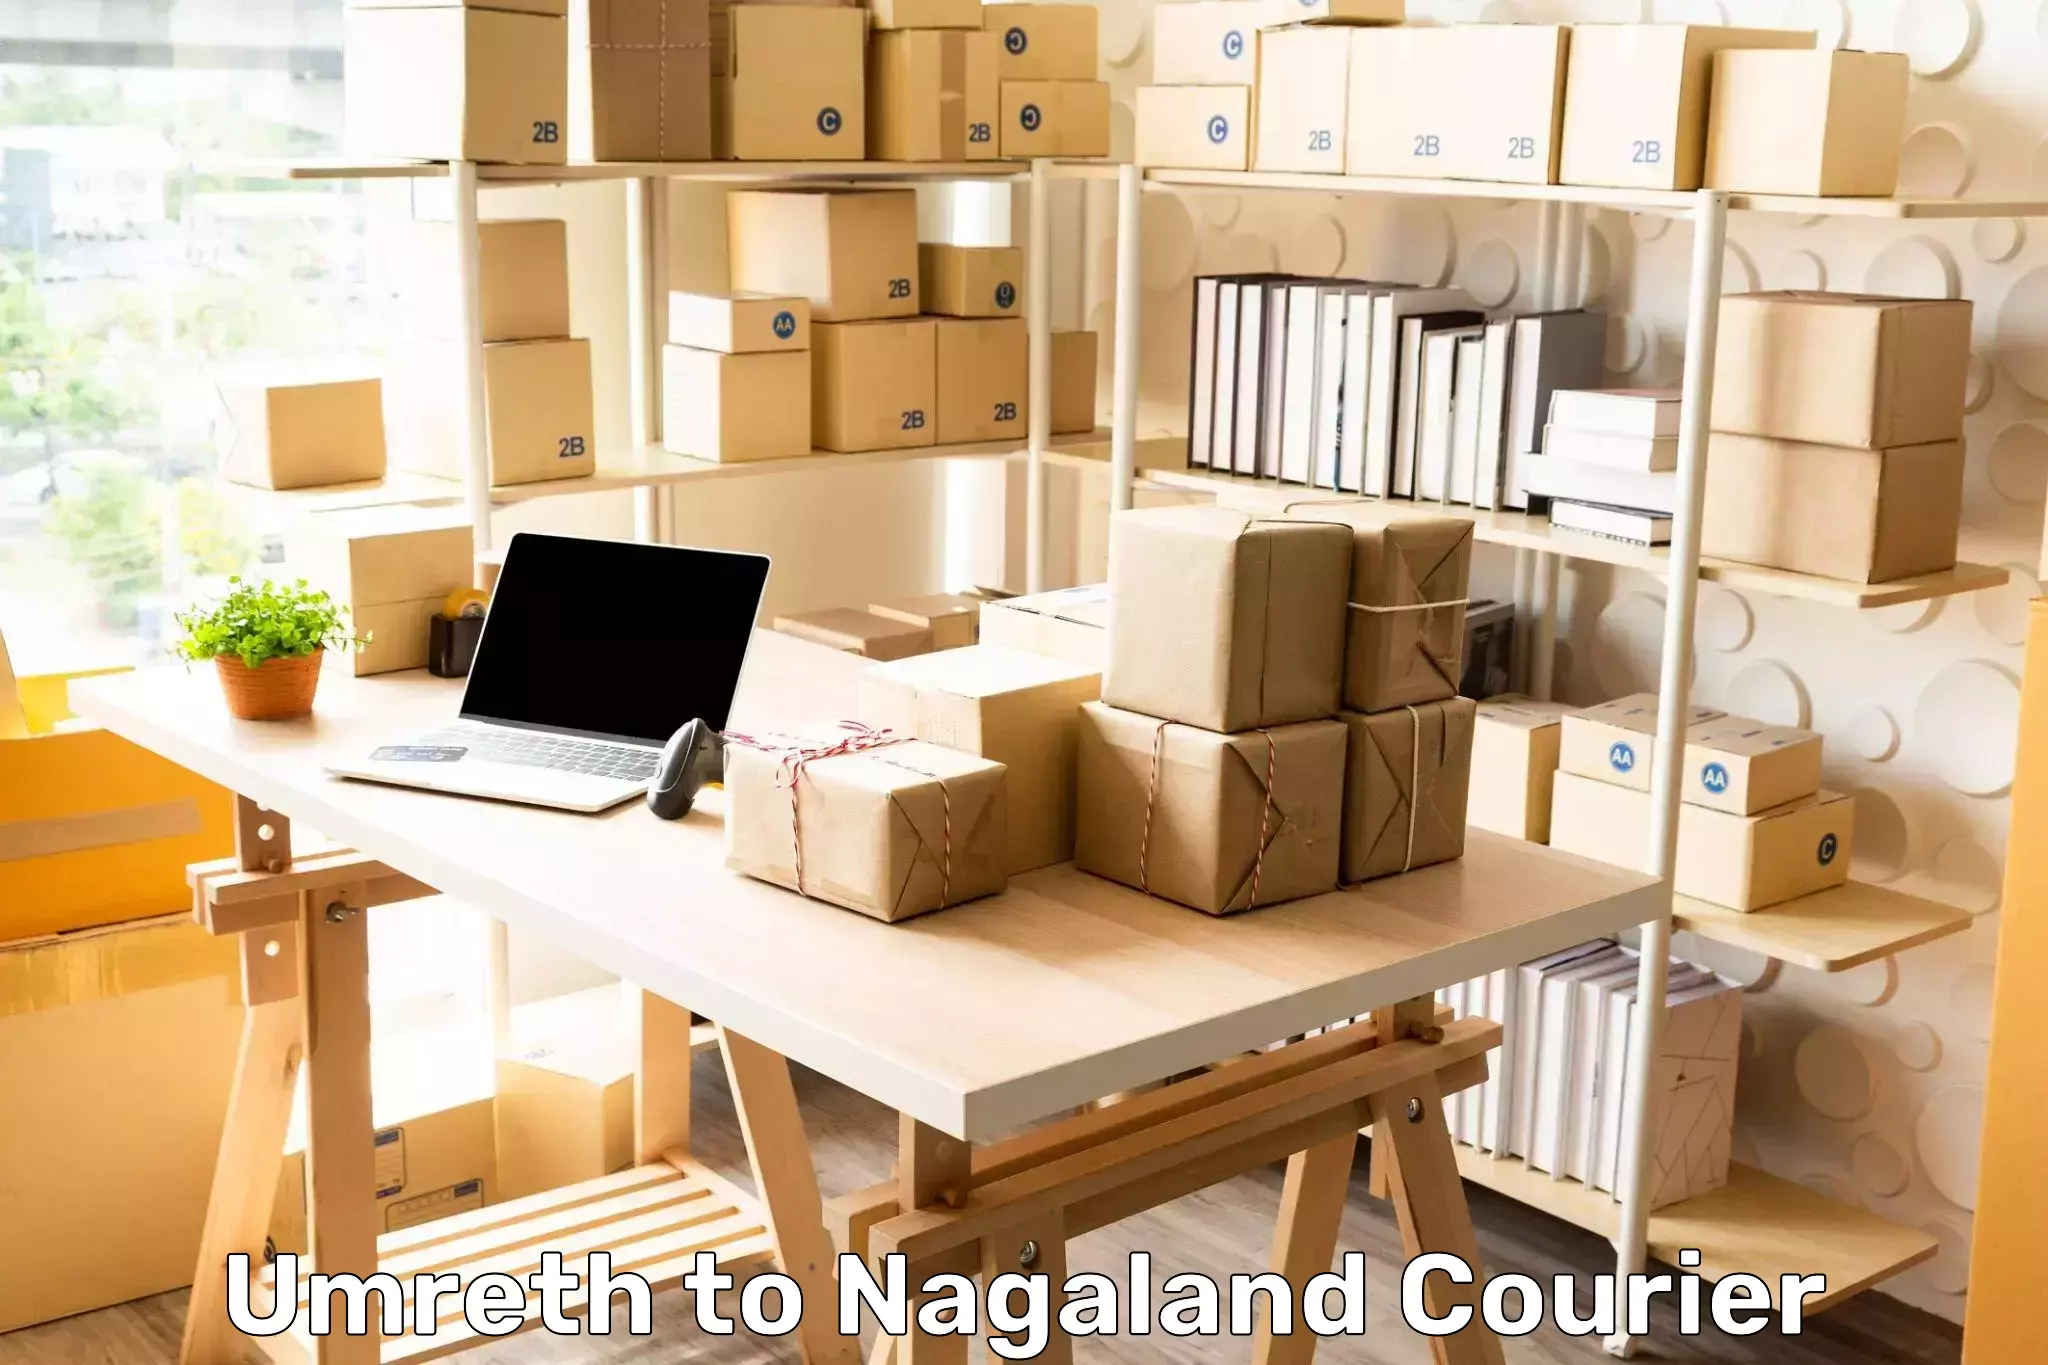 Efficient parcel service Umreth to Nagaland